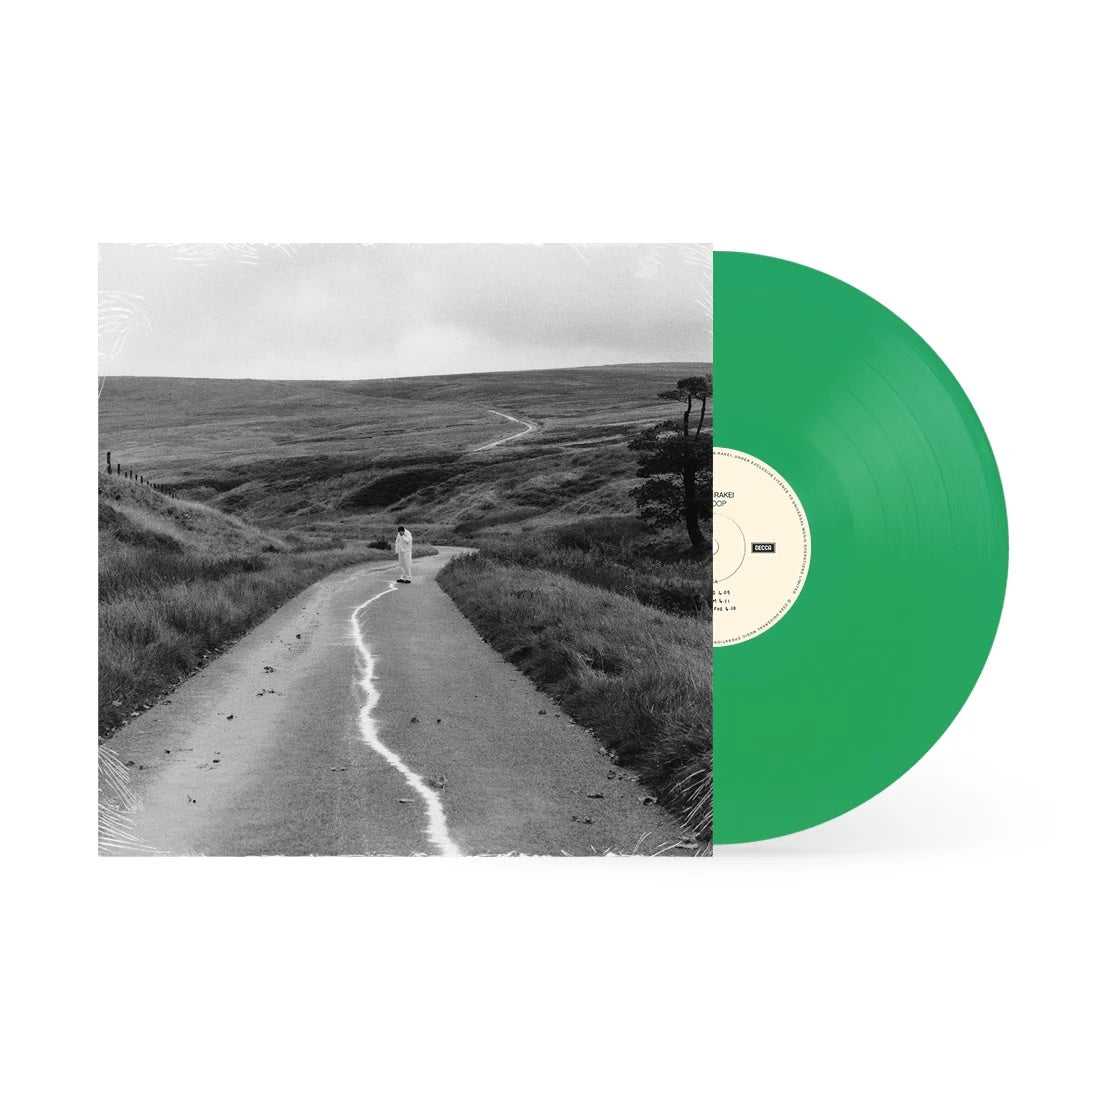 Jordan Rakei - The Loop [Indie-Exclusive Green Vinyl]